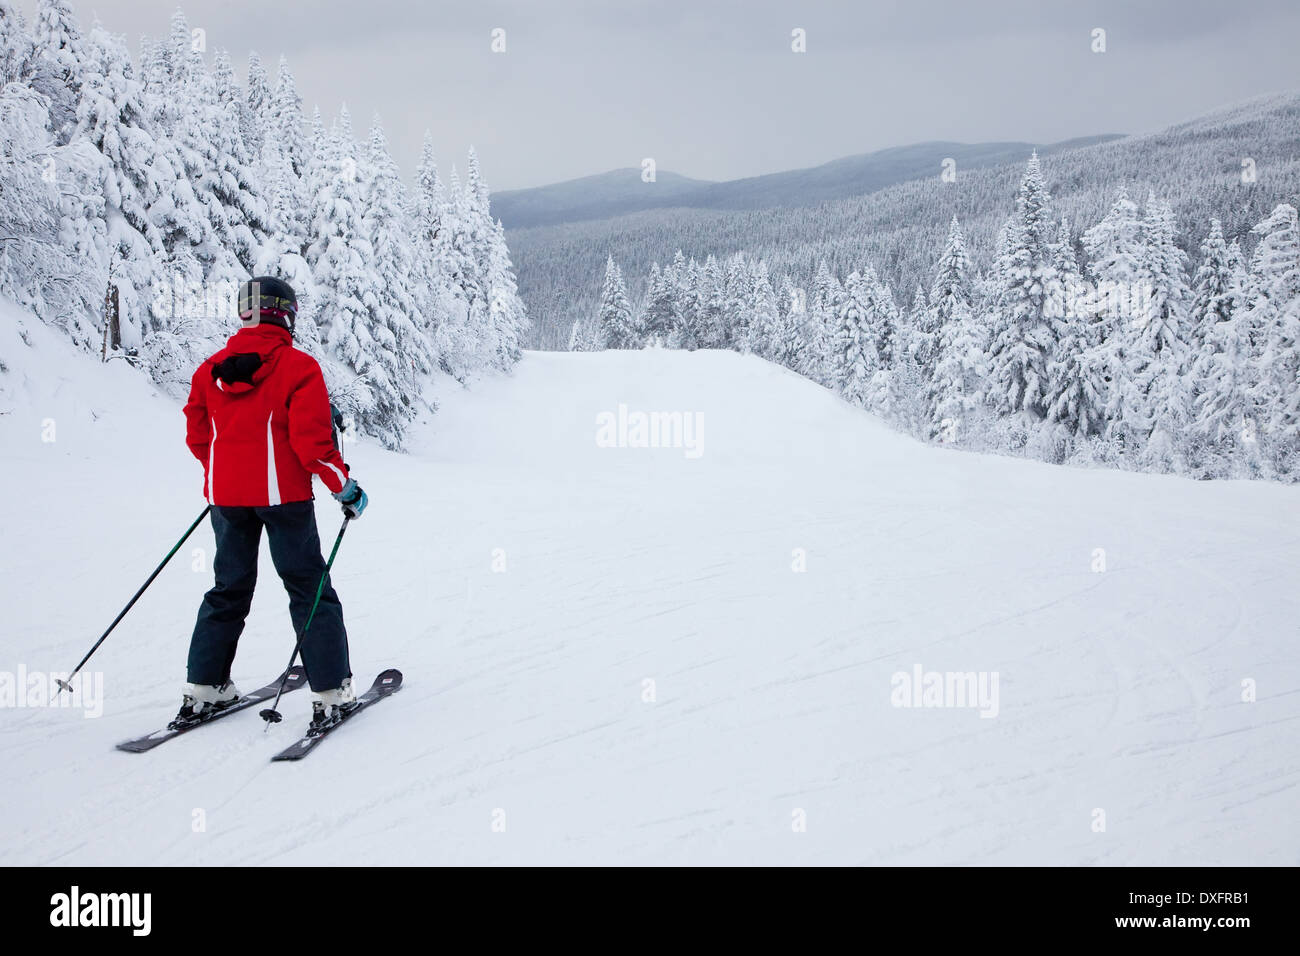 Mont-Tremblant, Quebec, Canadá - 9 de febrero de 2014: un solitario esquiador se desliza por una pendiente fácil al resort de esquí Mont-Tremblant. Foto de stock